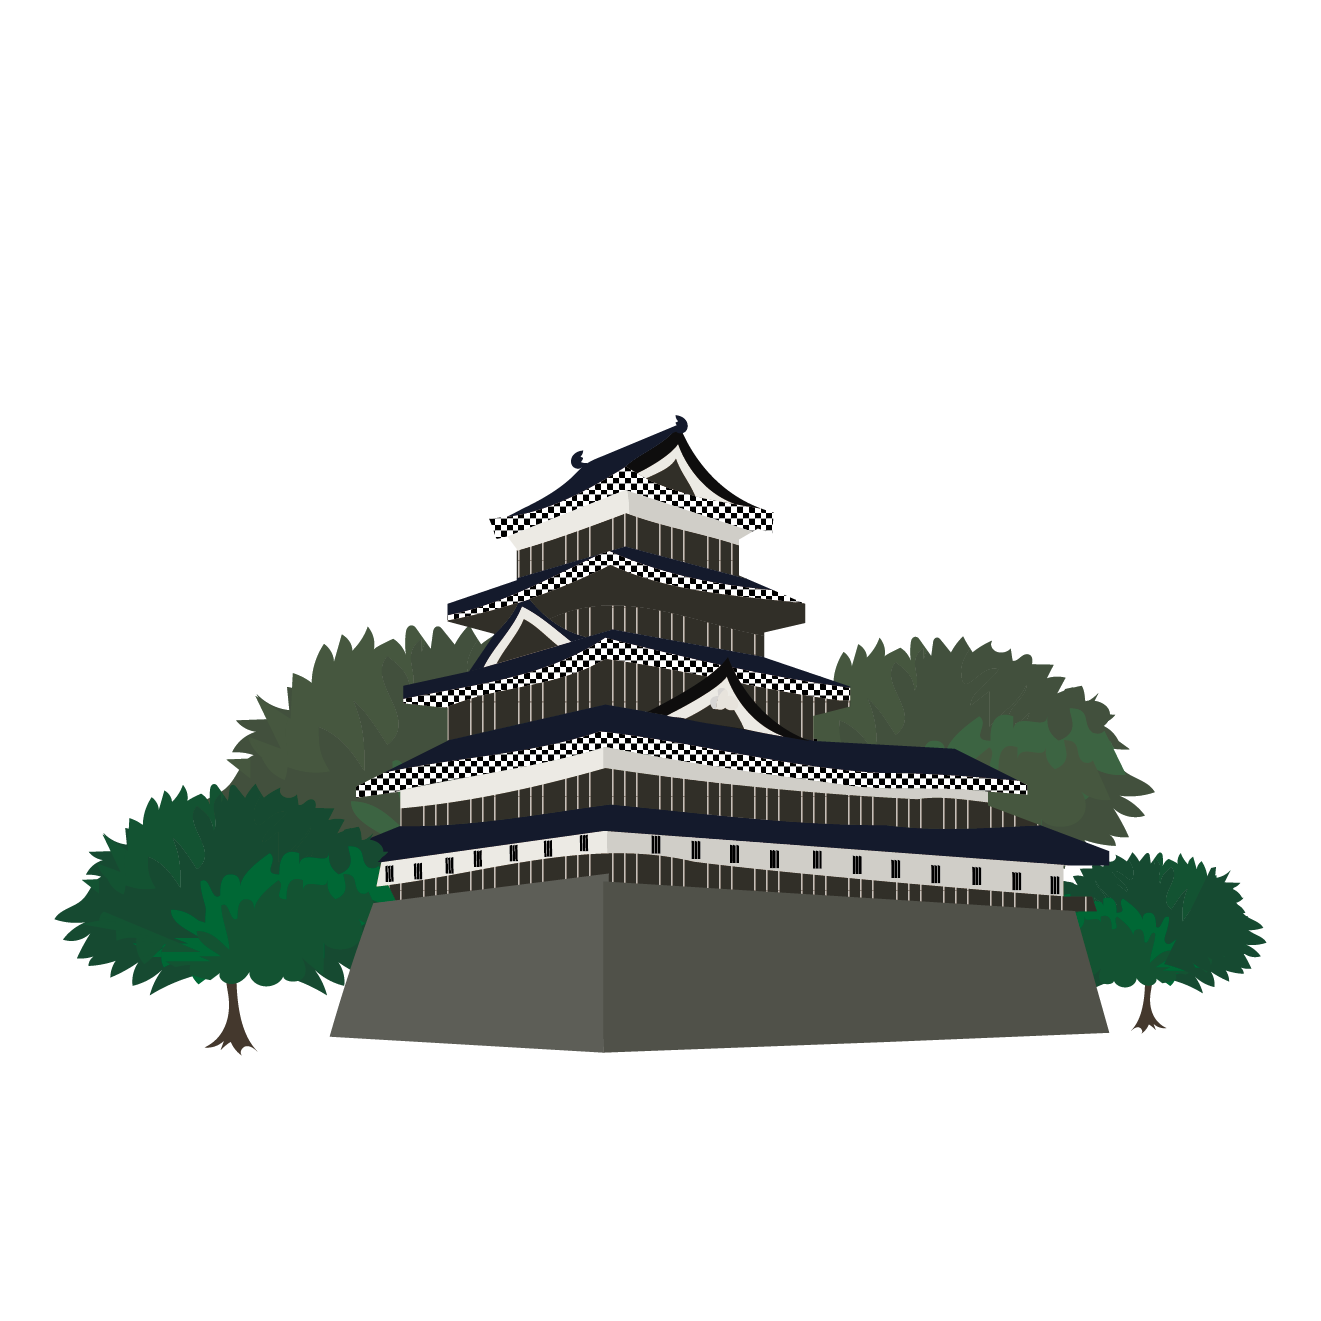 お城 イラスト 日本の城 商用フリー 無料 のイラスト素材なら イラストマンション